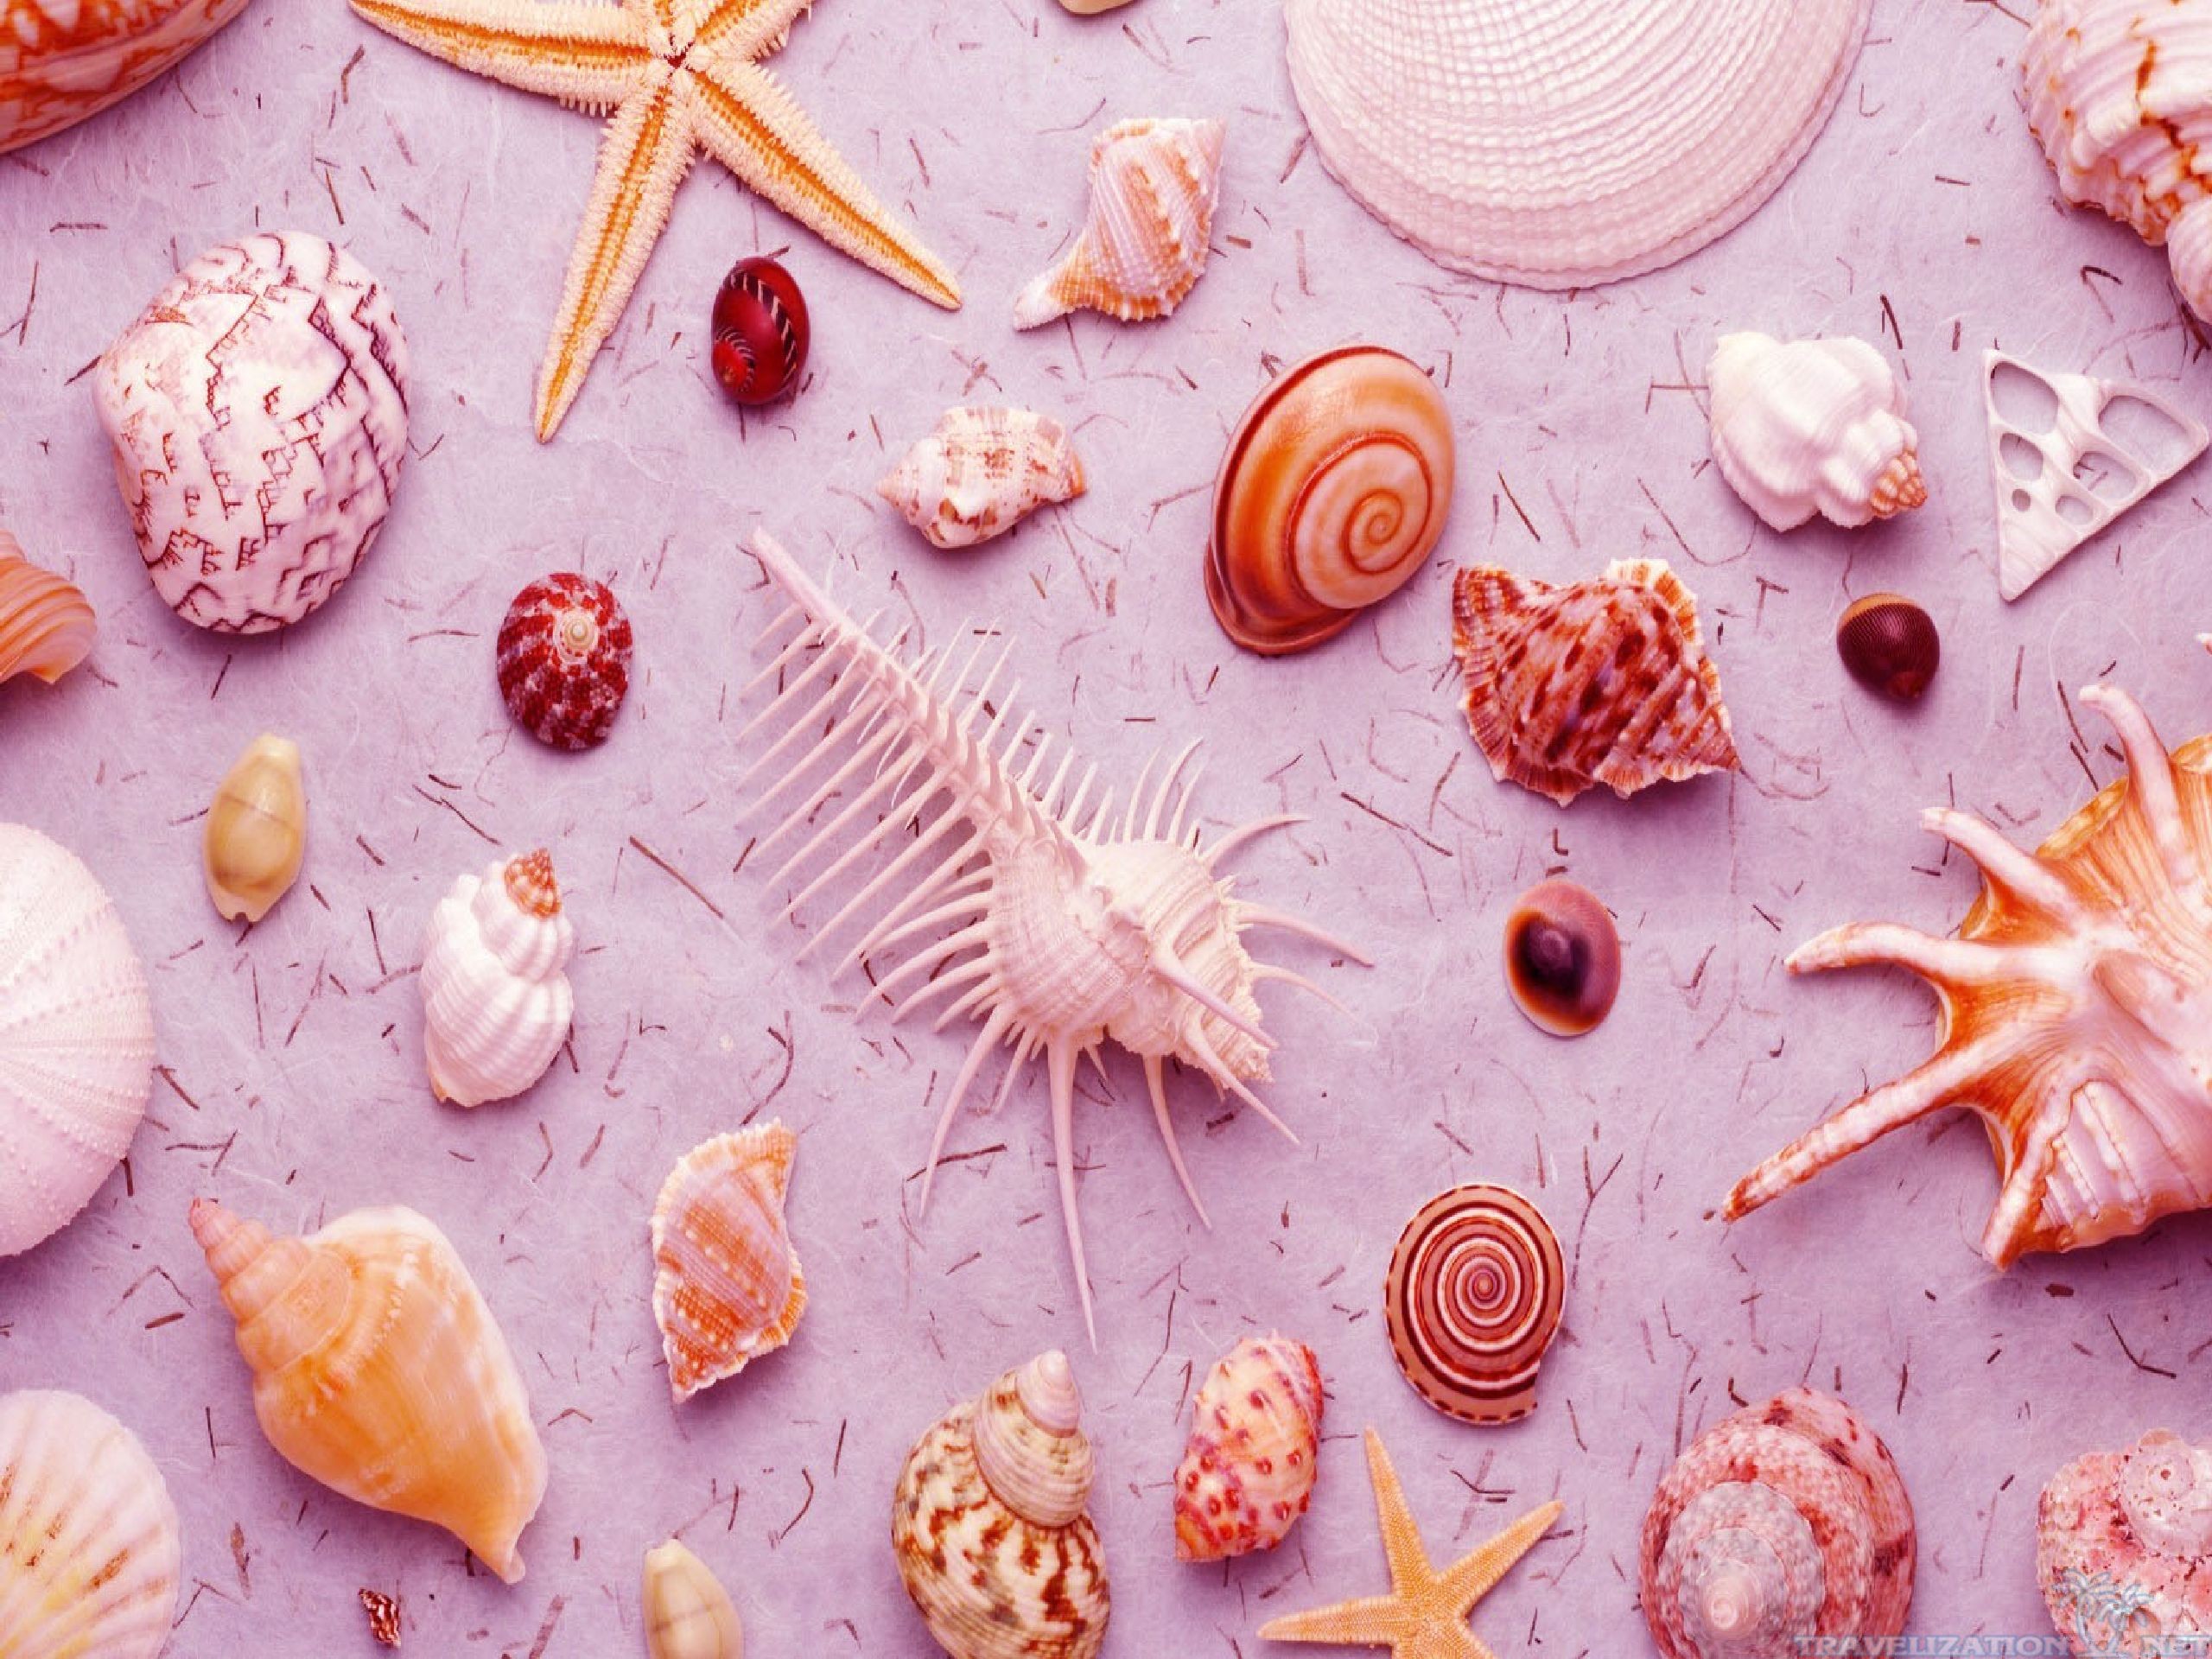 2560x1920 ... 2560Ã1920. Amazing Seashells Wallpapers. Amazing Seashells Wallpapers